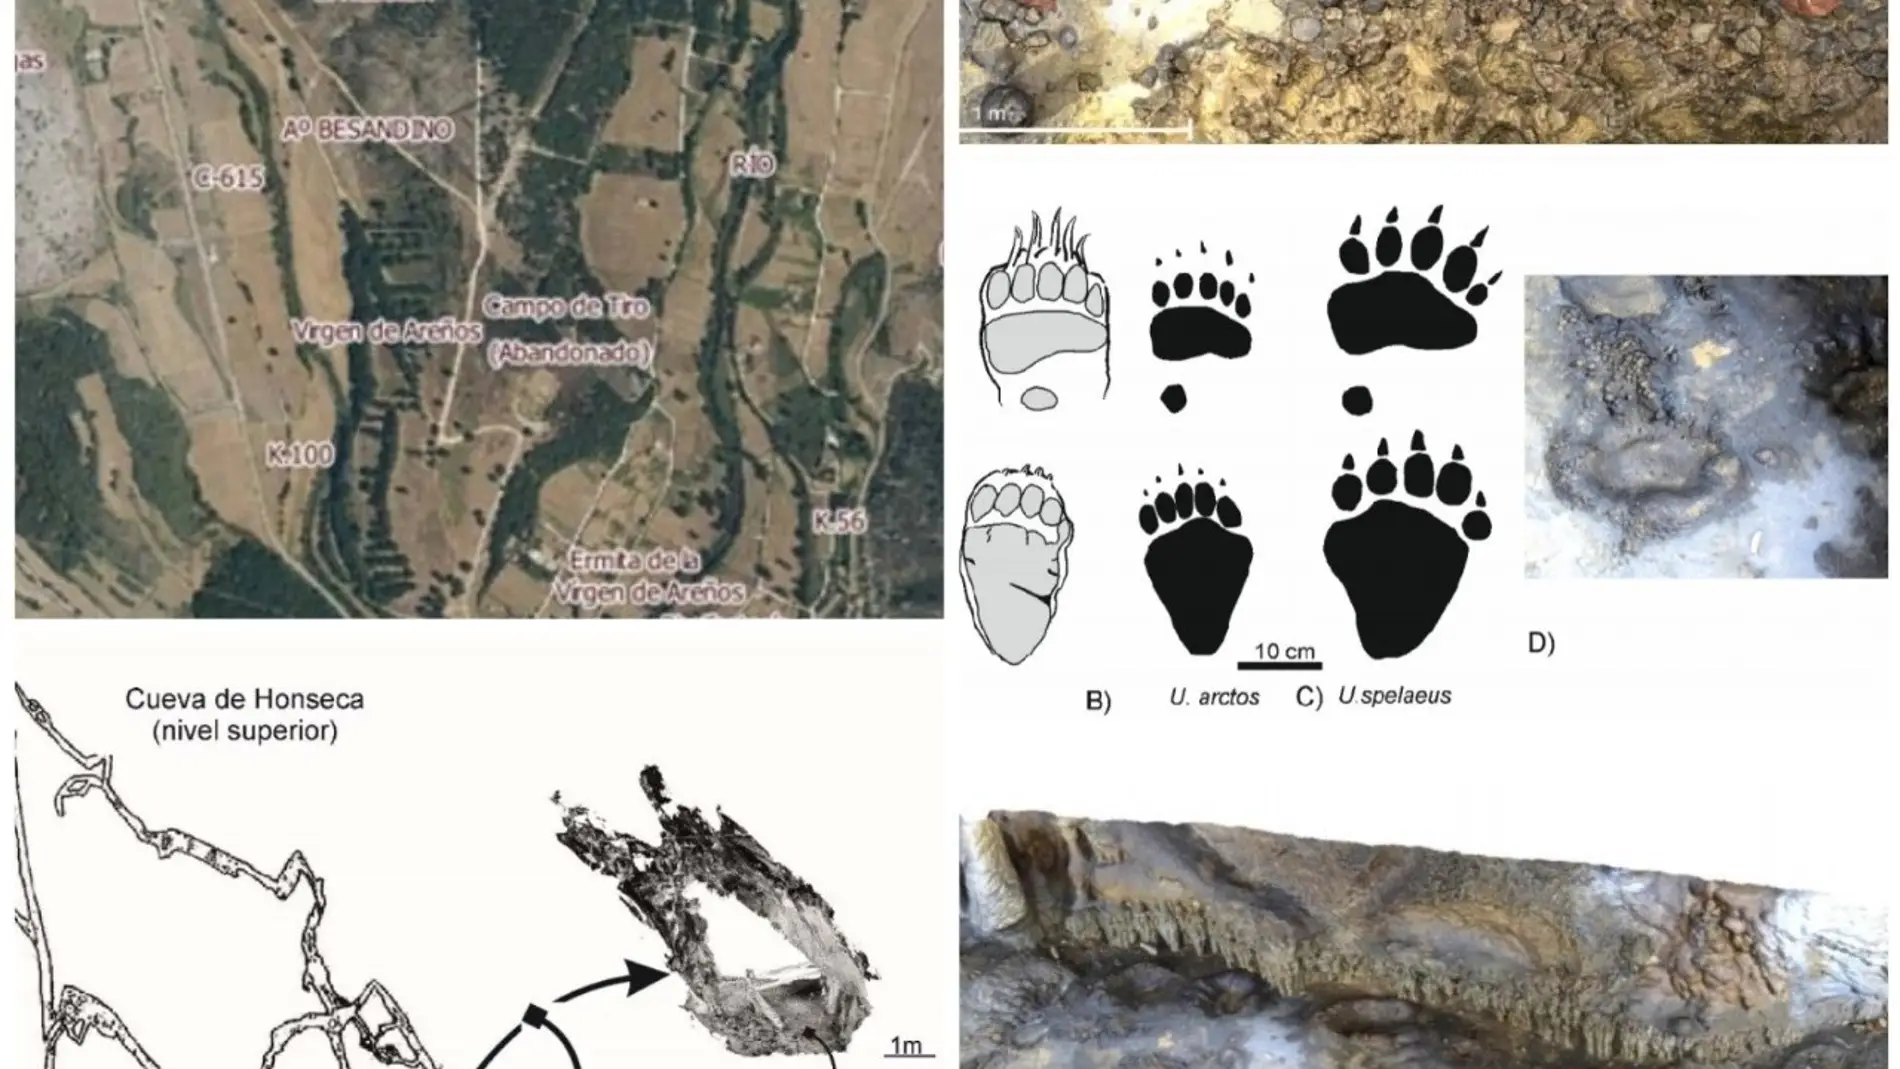 El CENIEH concluye que las huellas de la Cueva de Honseca de Velilla del Río Carrión son de oso cavernario